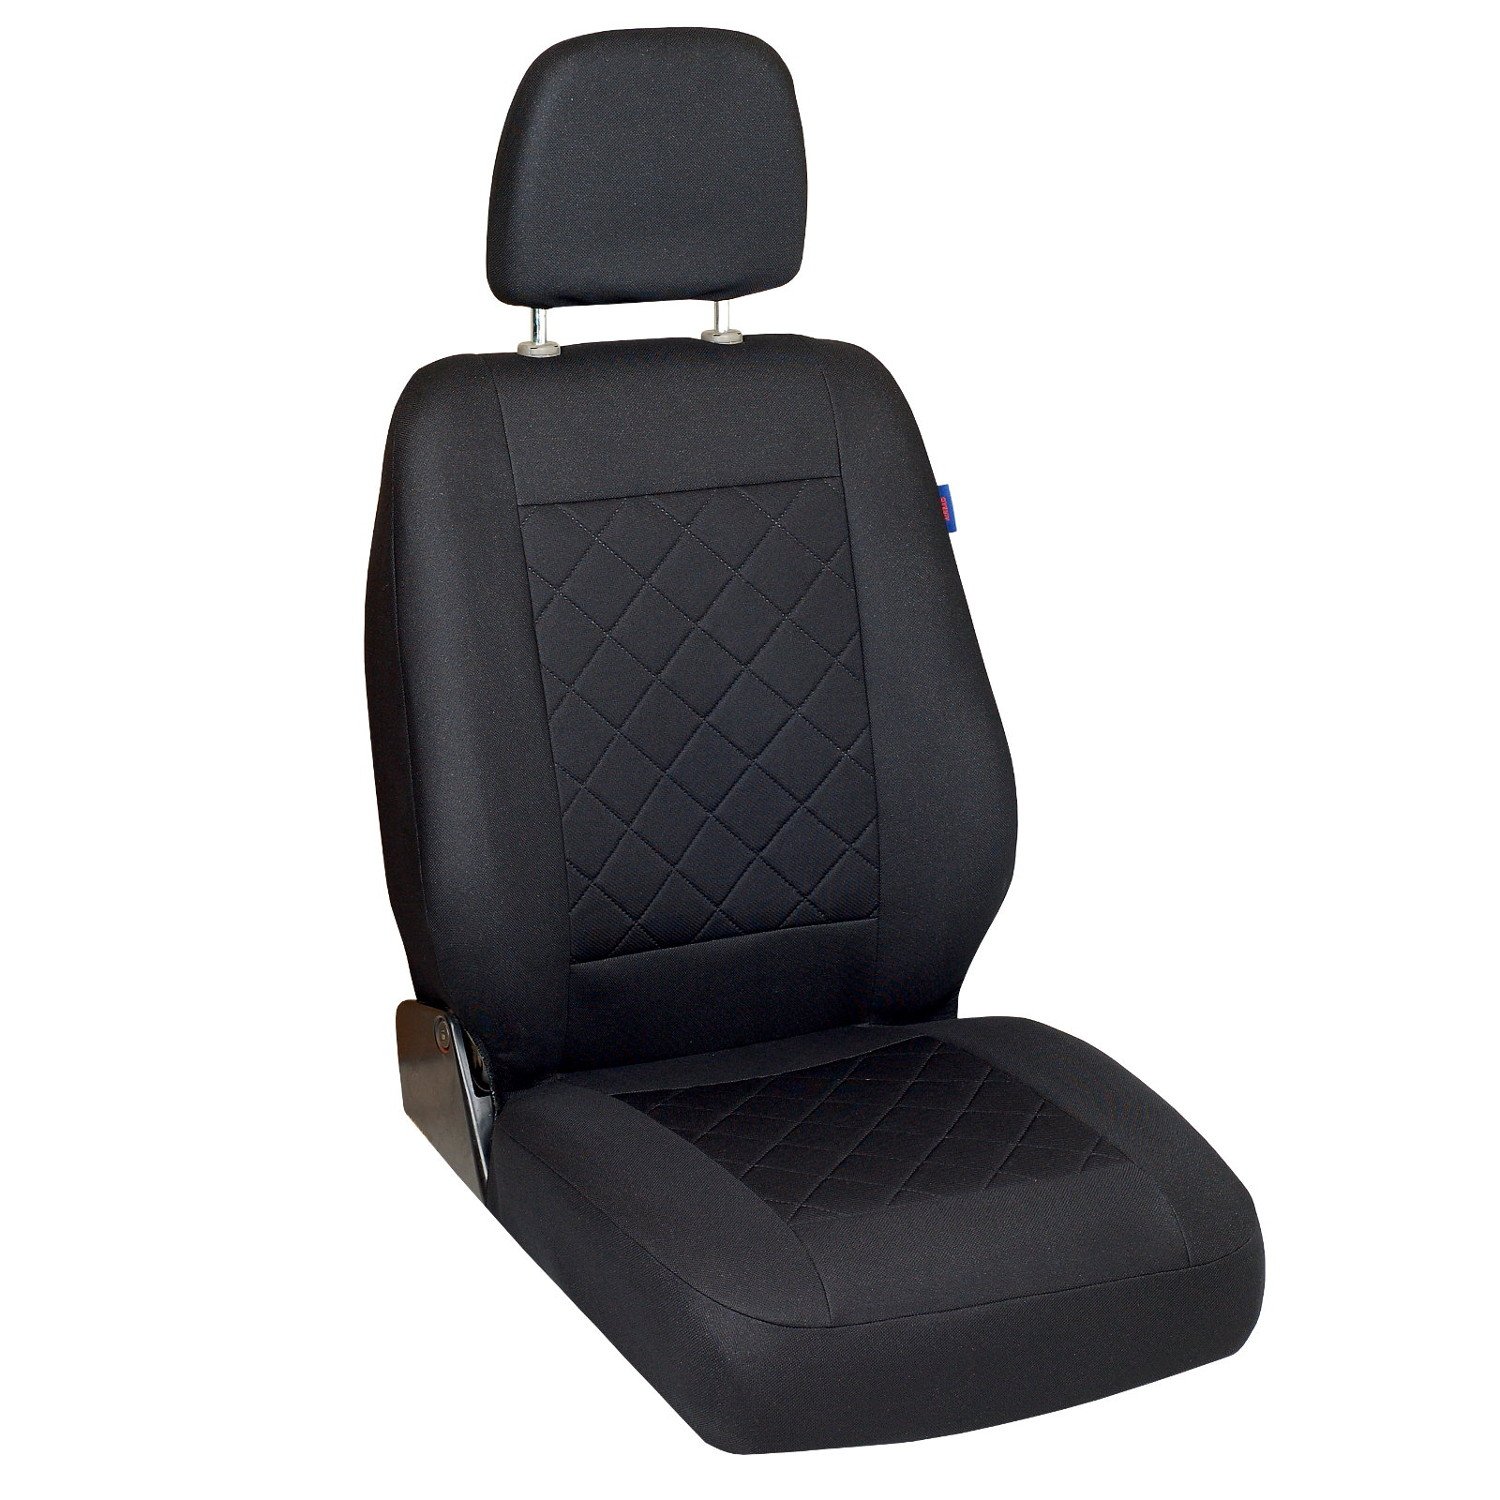 Zakschneider T4 Sitzbezug - Fahrersitz - Farbe Premium Schwarz gepresstes Karomuster von Zakschneider